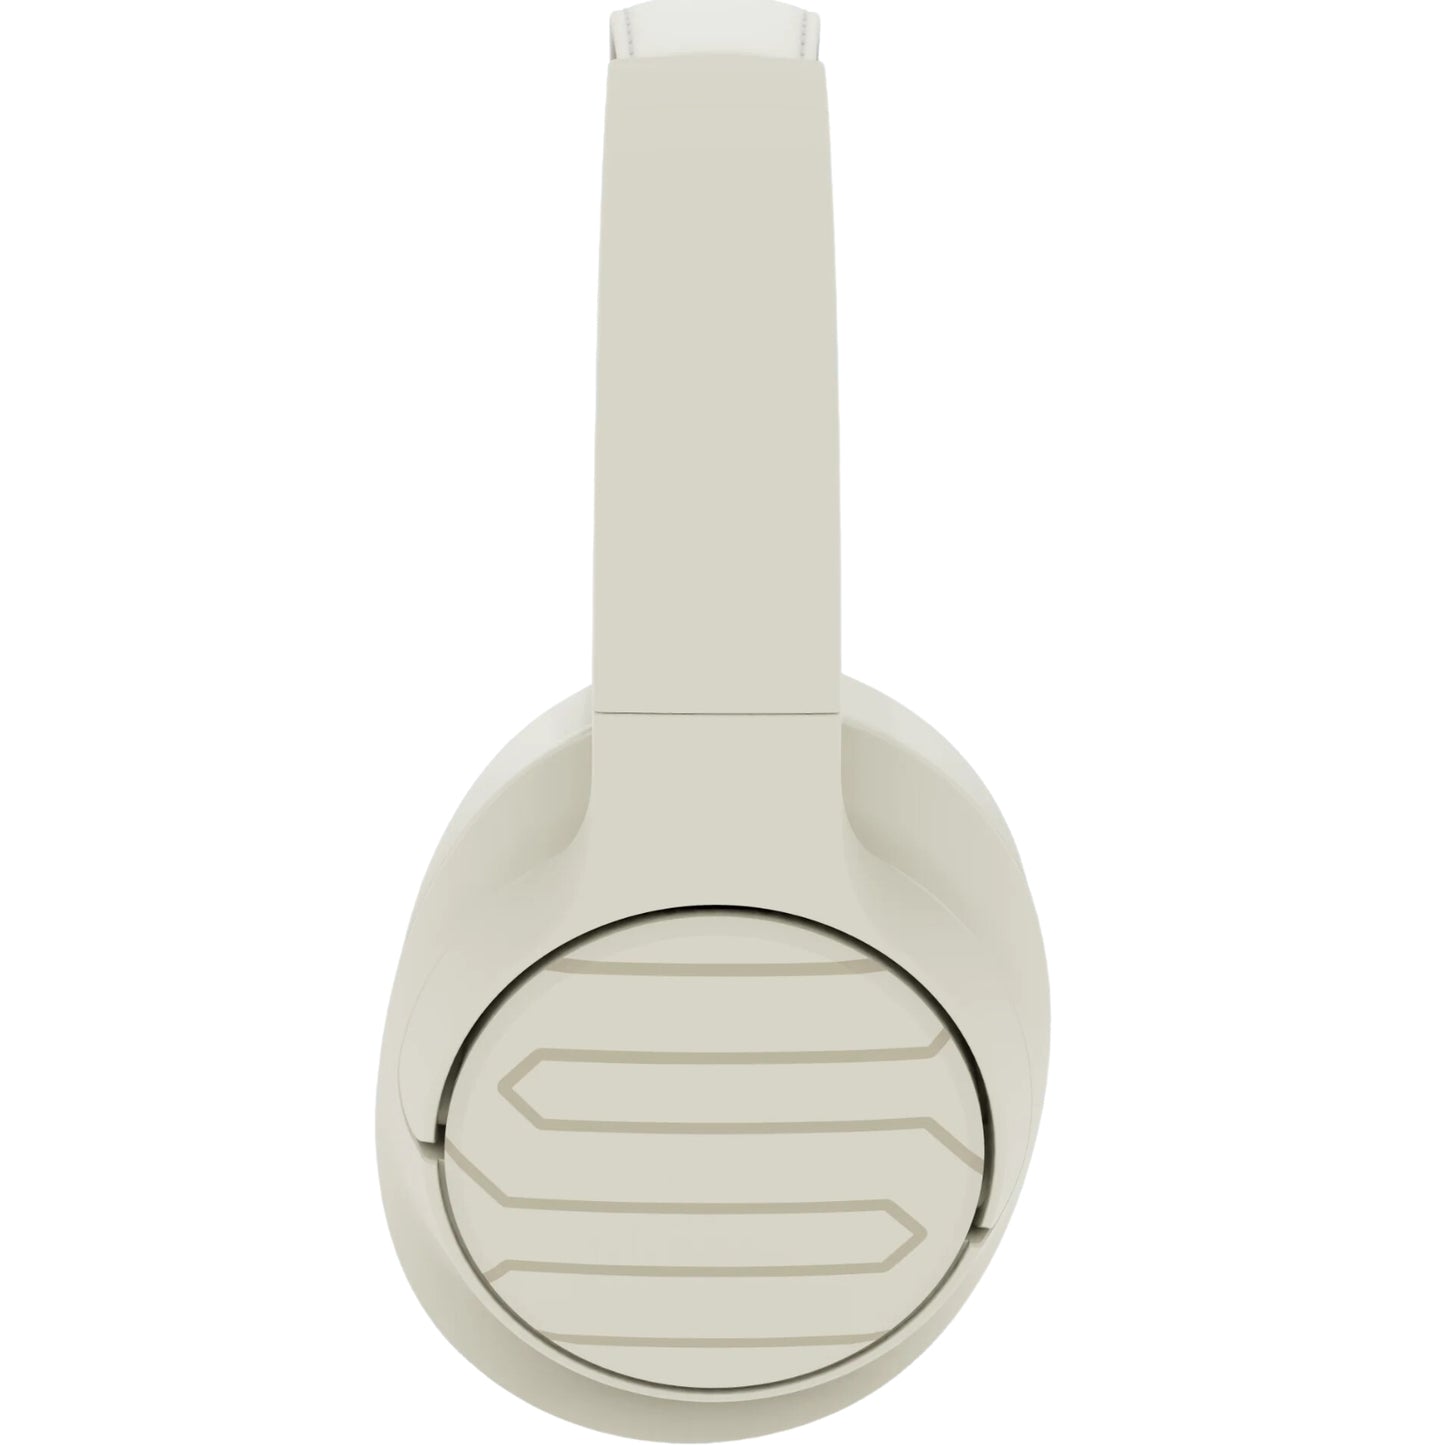 Soul Ultra Wireless 2 Headphones Beige - MyMobile